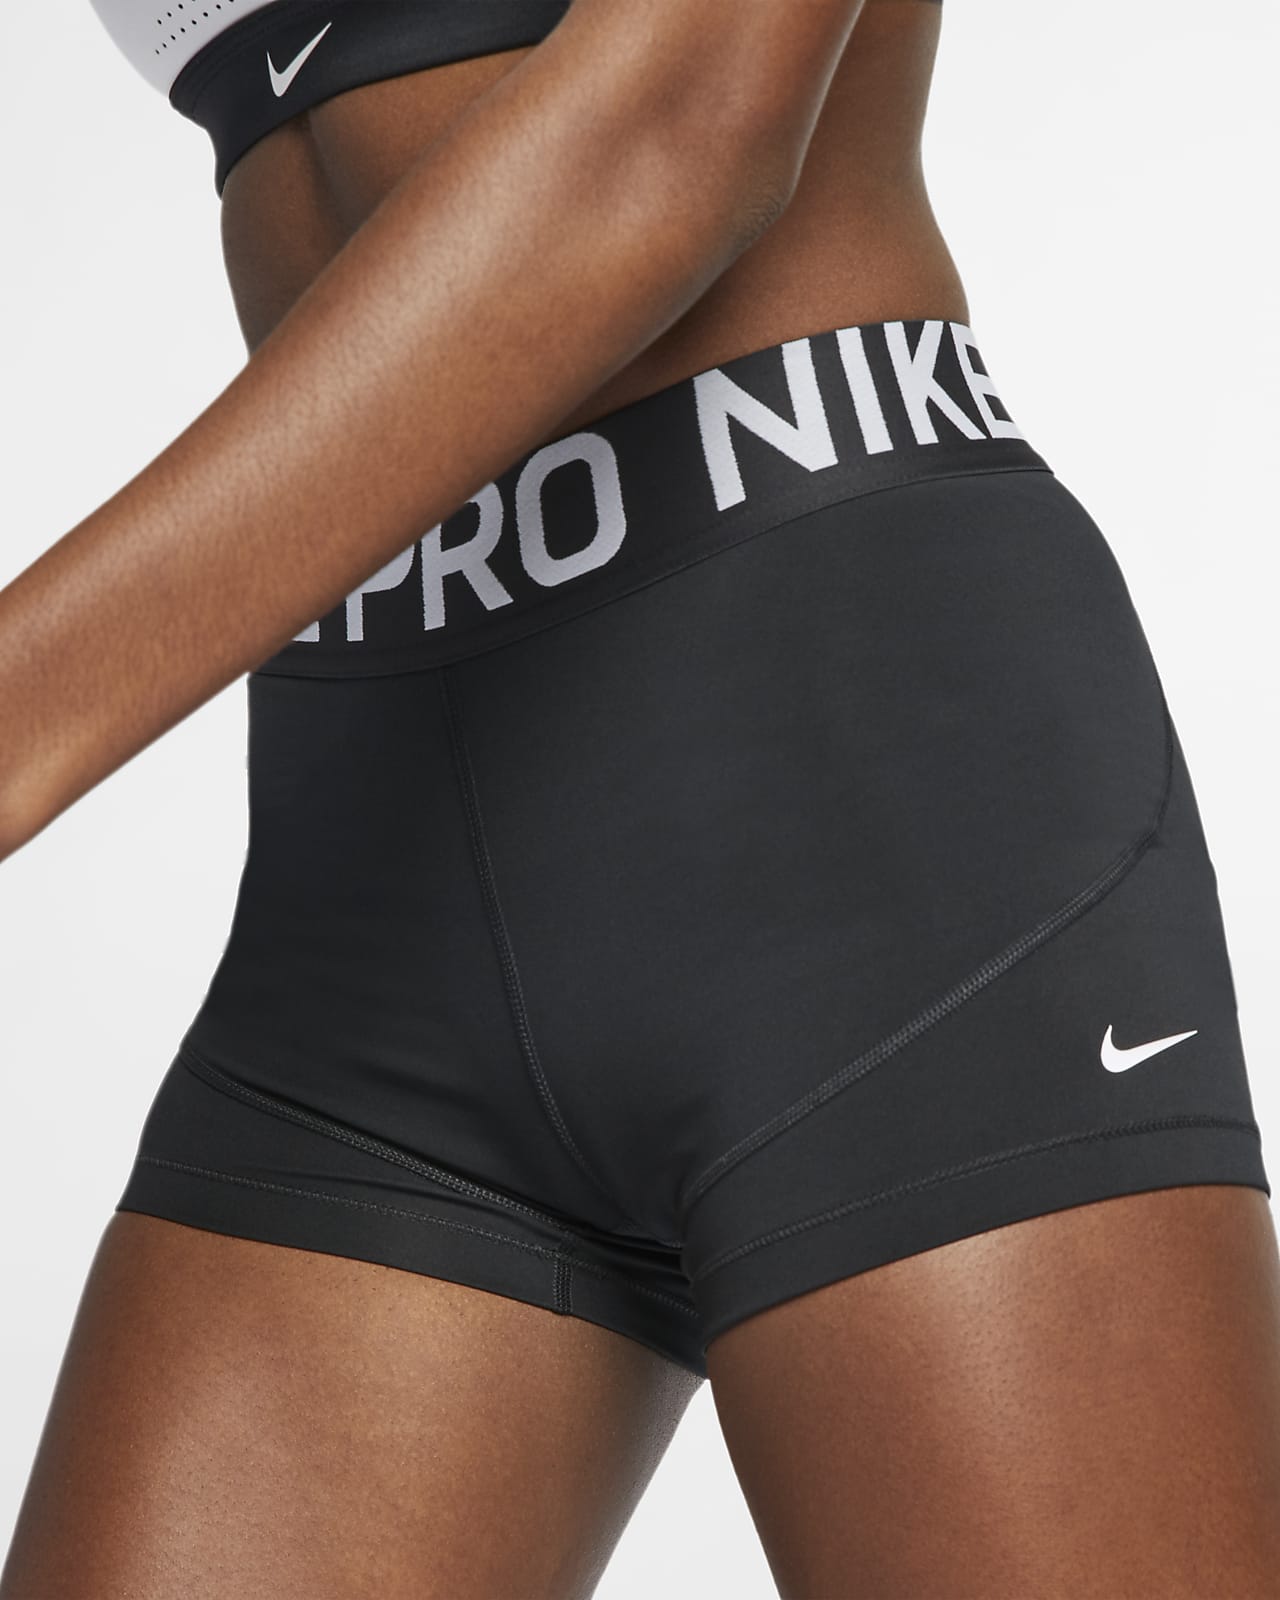 nike pro shorts women's canada